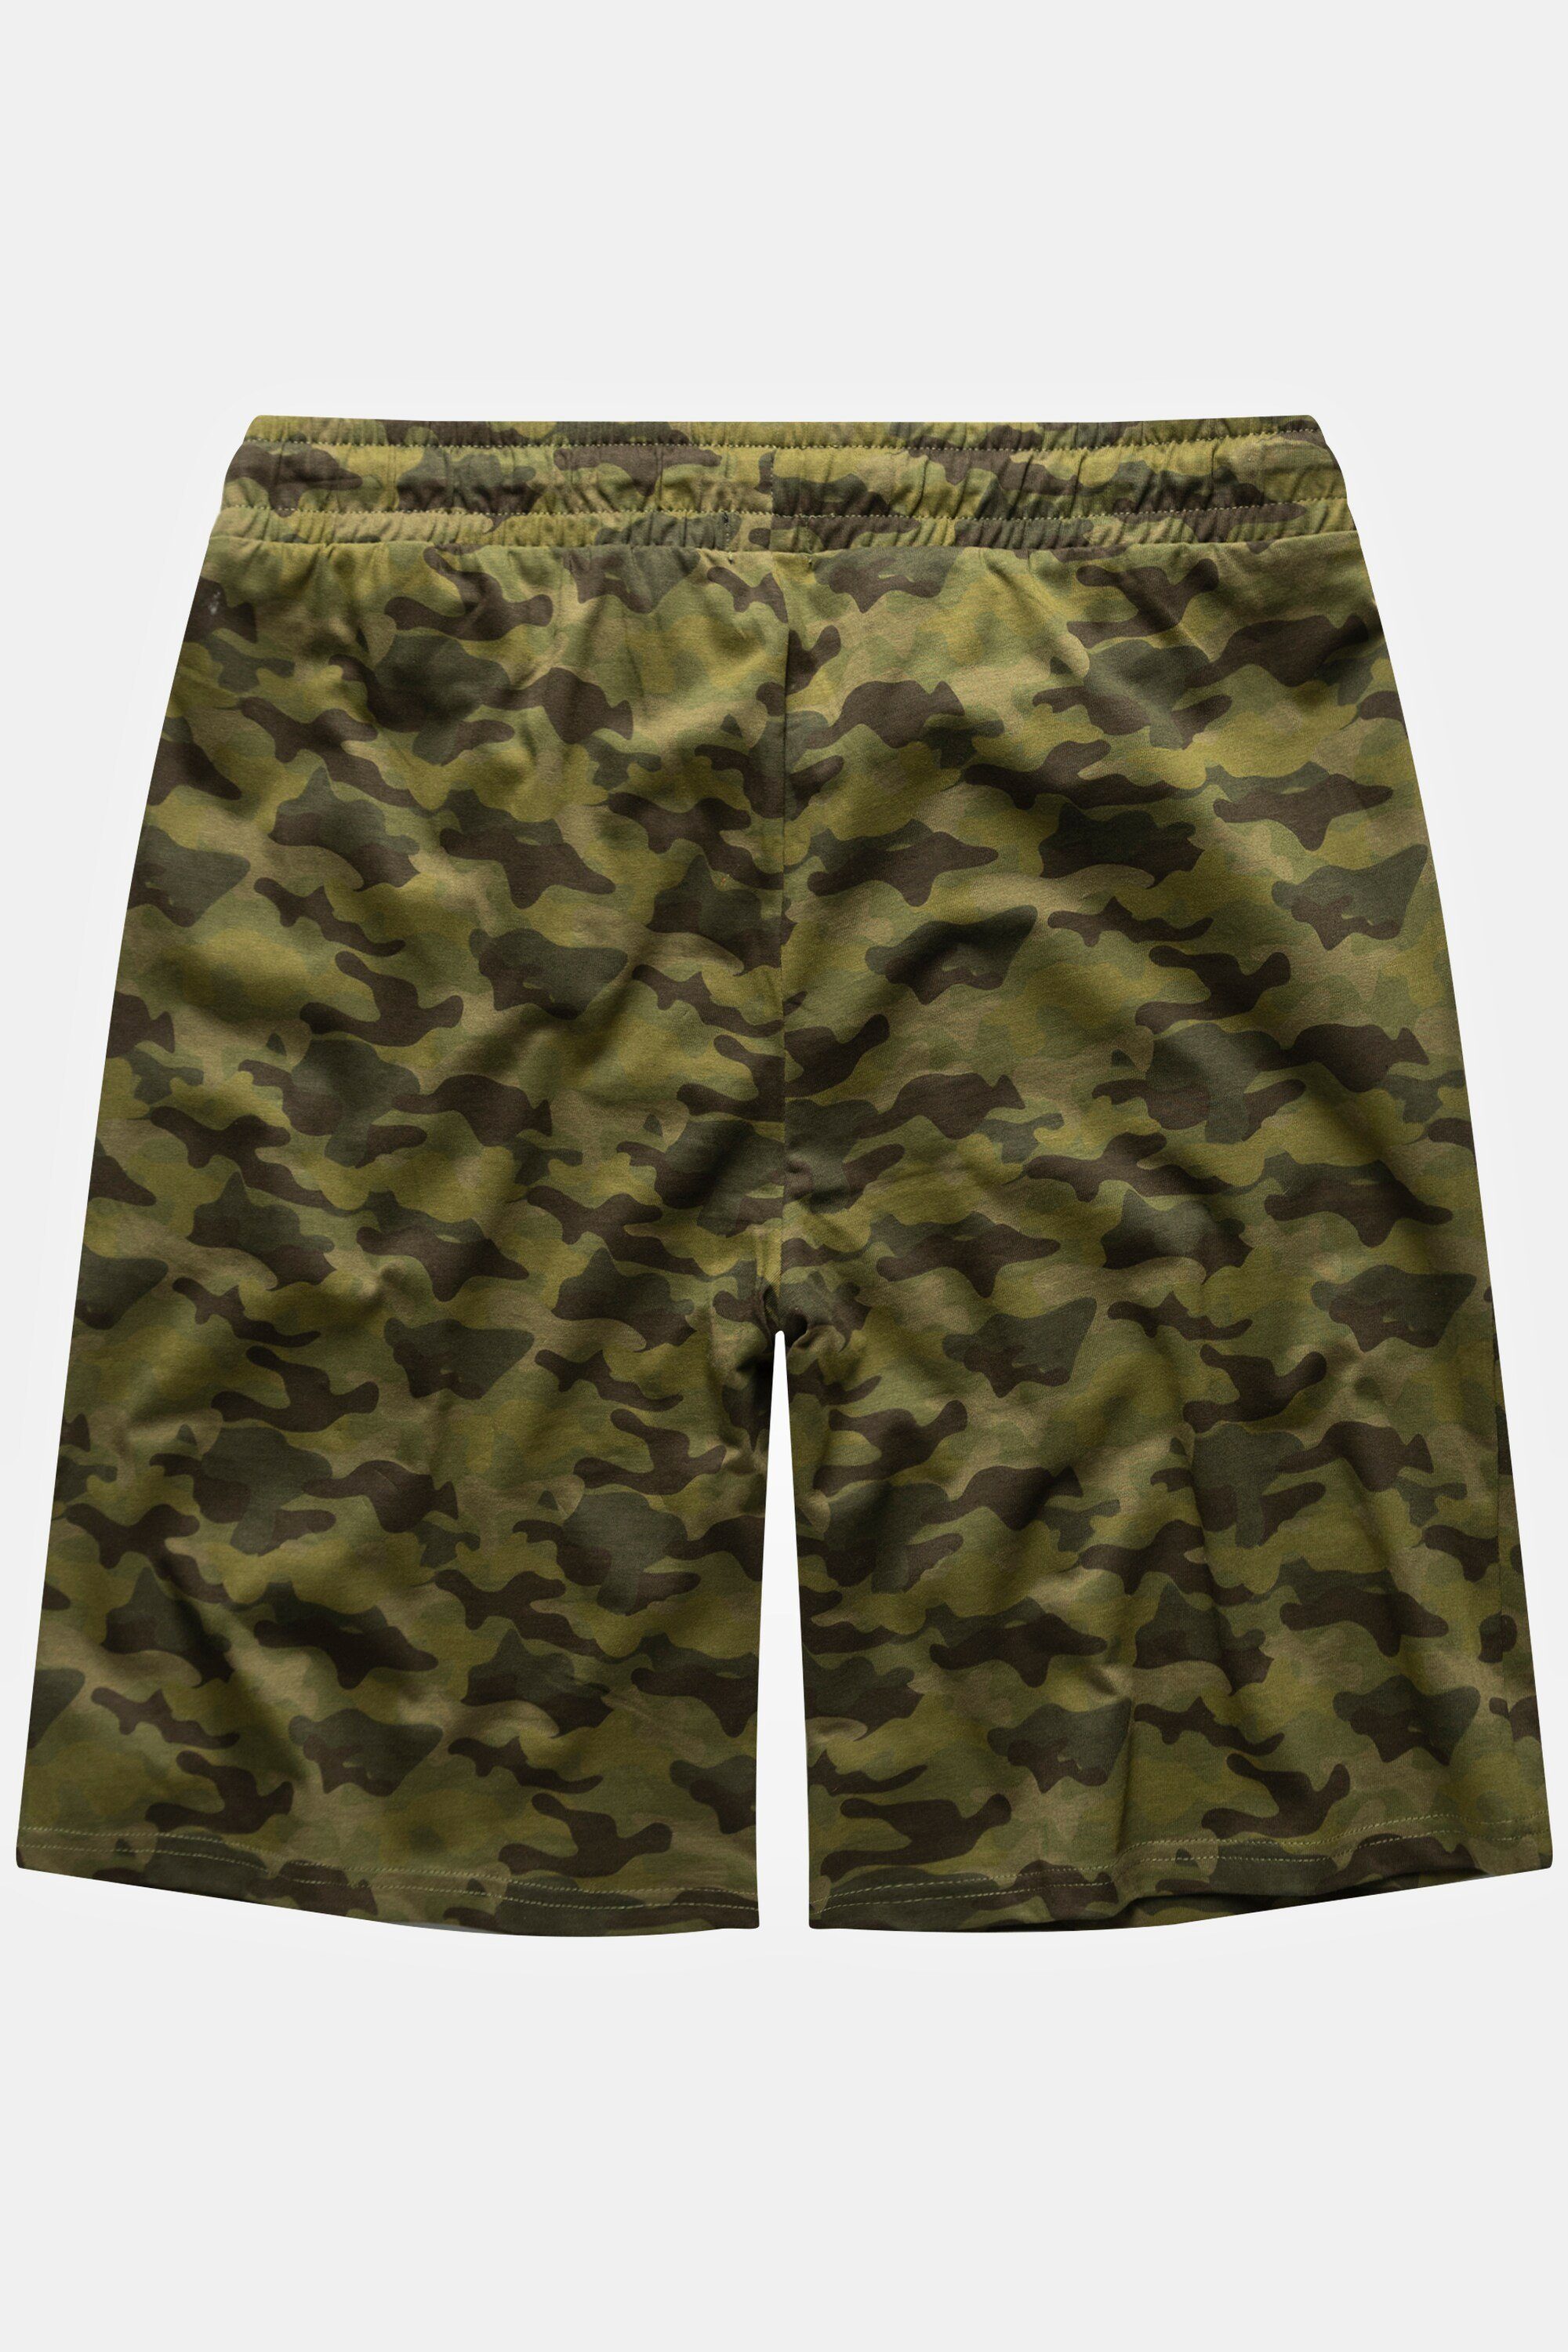 Schlafanzug Print Bermuda Camouflage Shorts Elastikbund JP1880